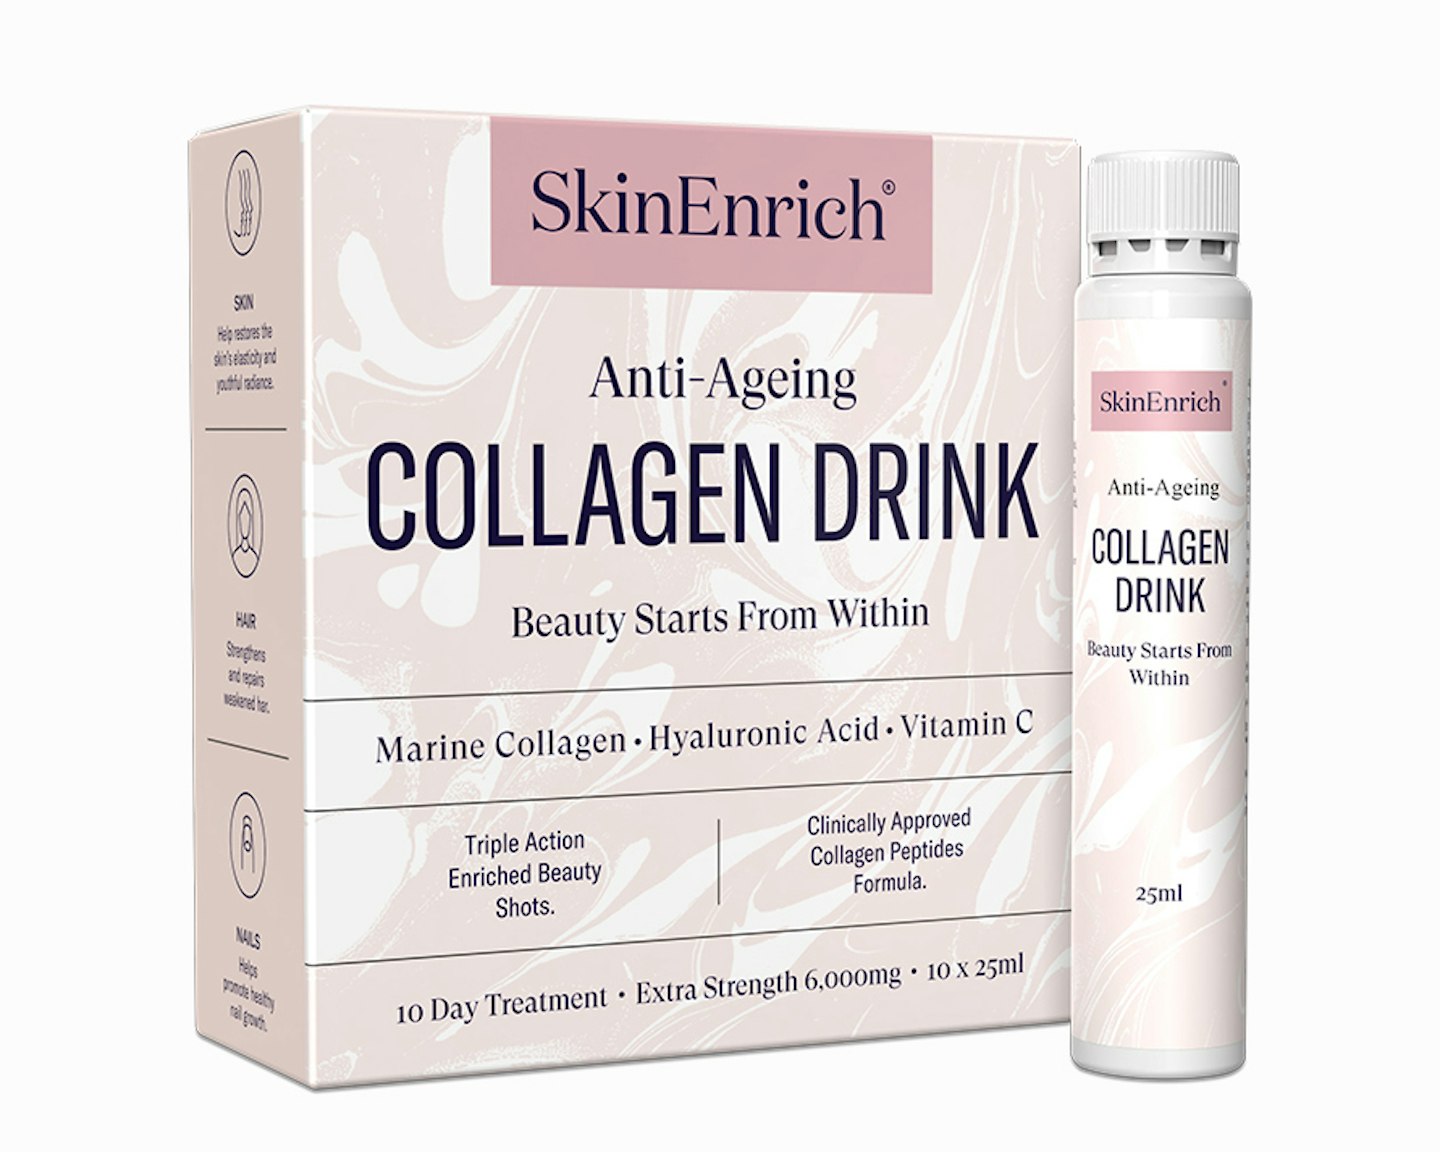 SkinEnrich Anti-Ageing Collagen Drink